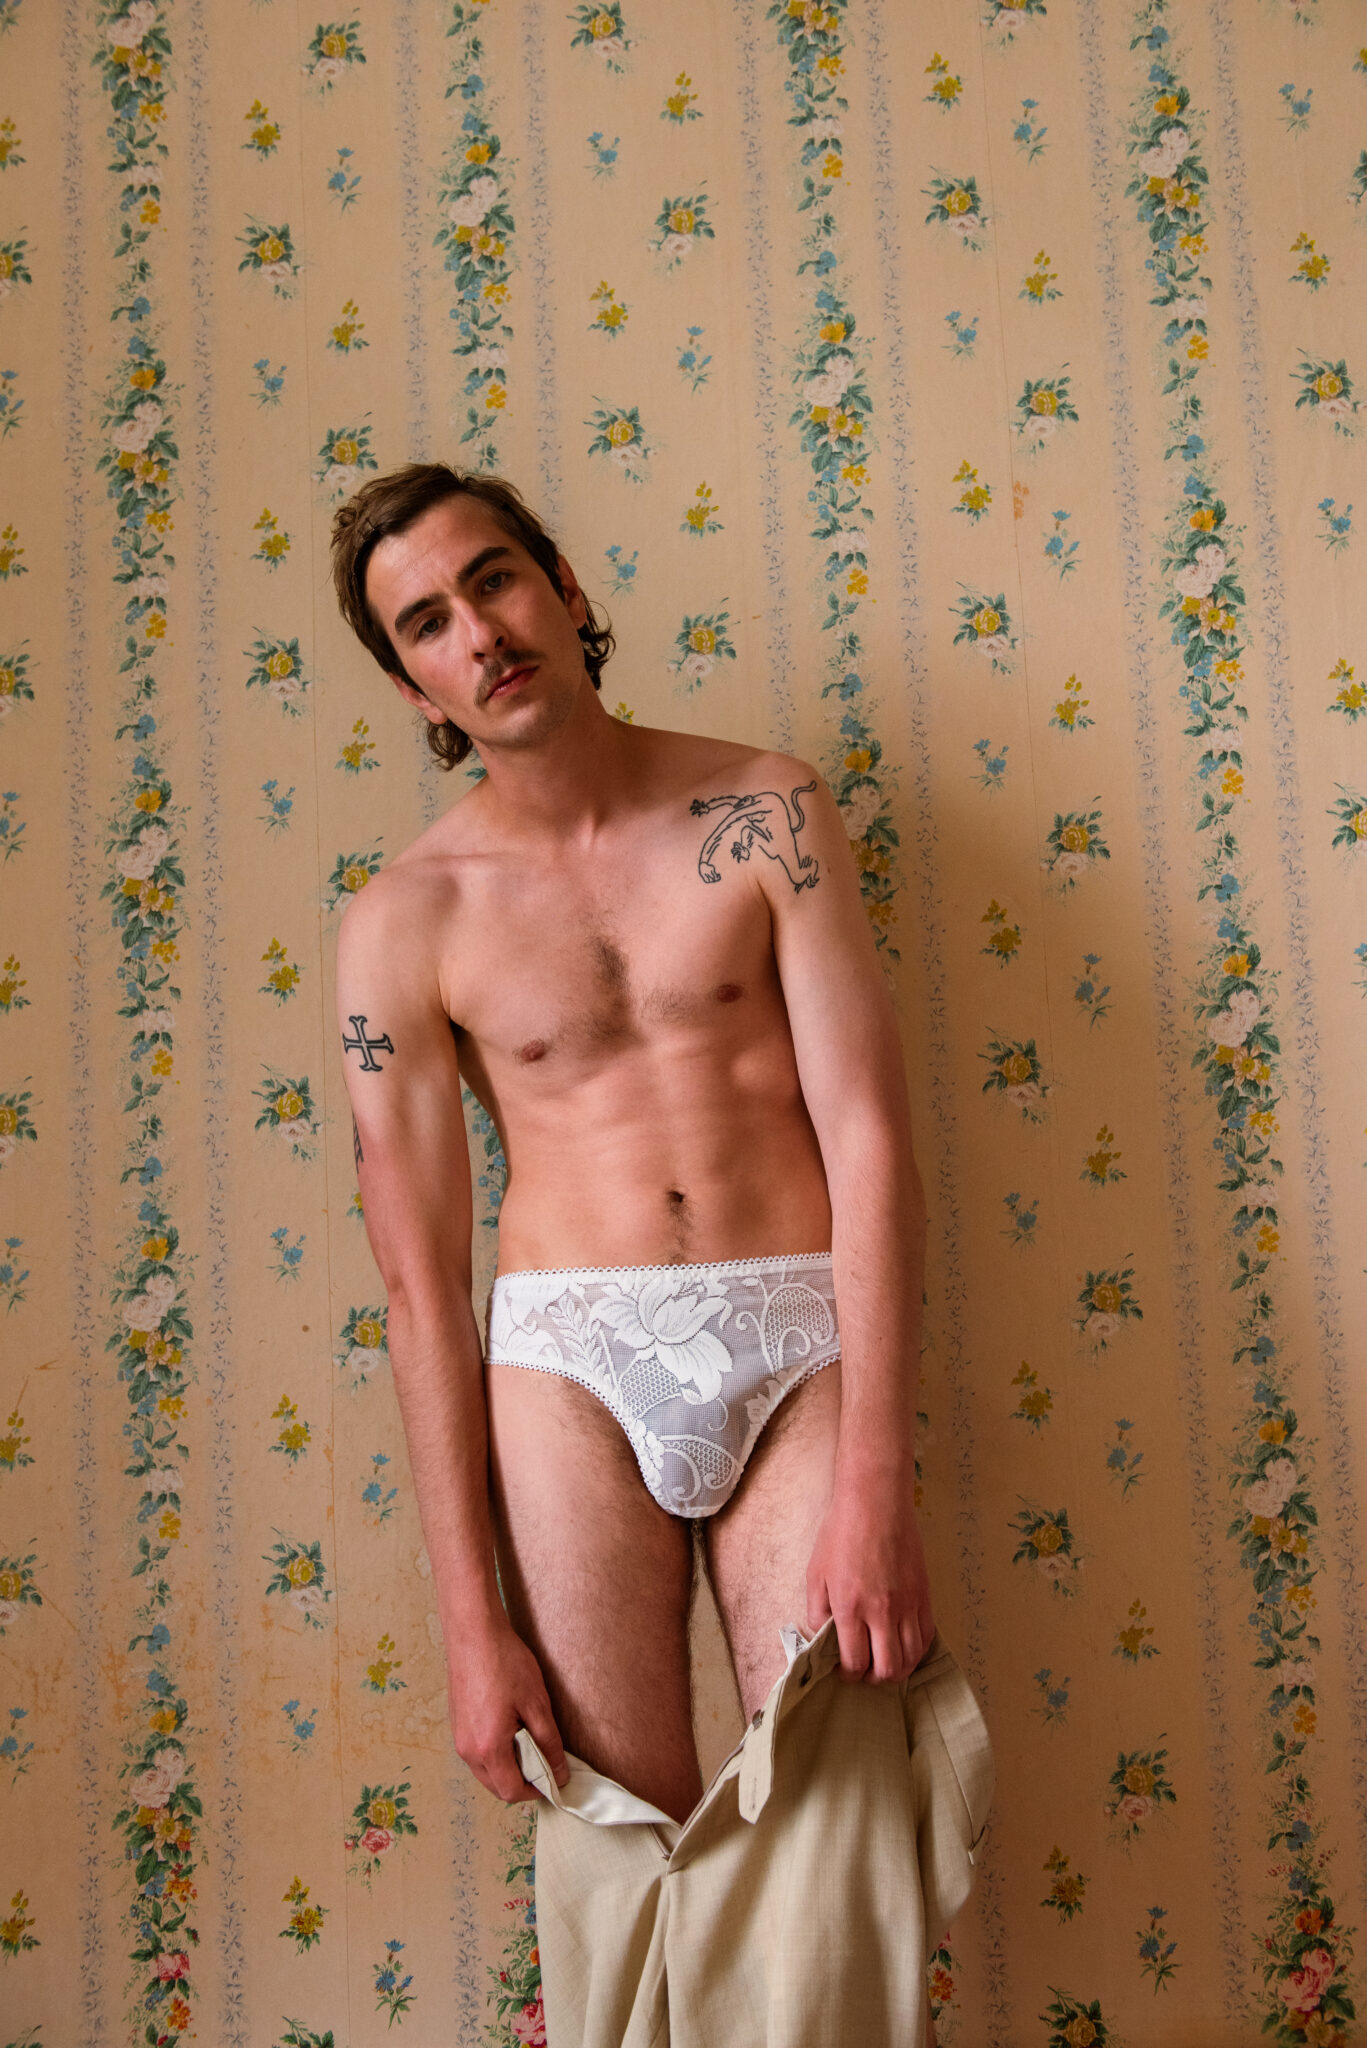 Image d'illustration campagne Napperon, homme en sous-vêtements dans chambre